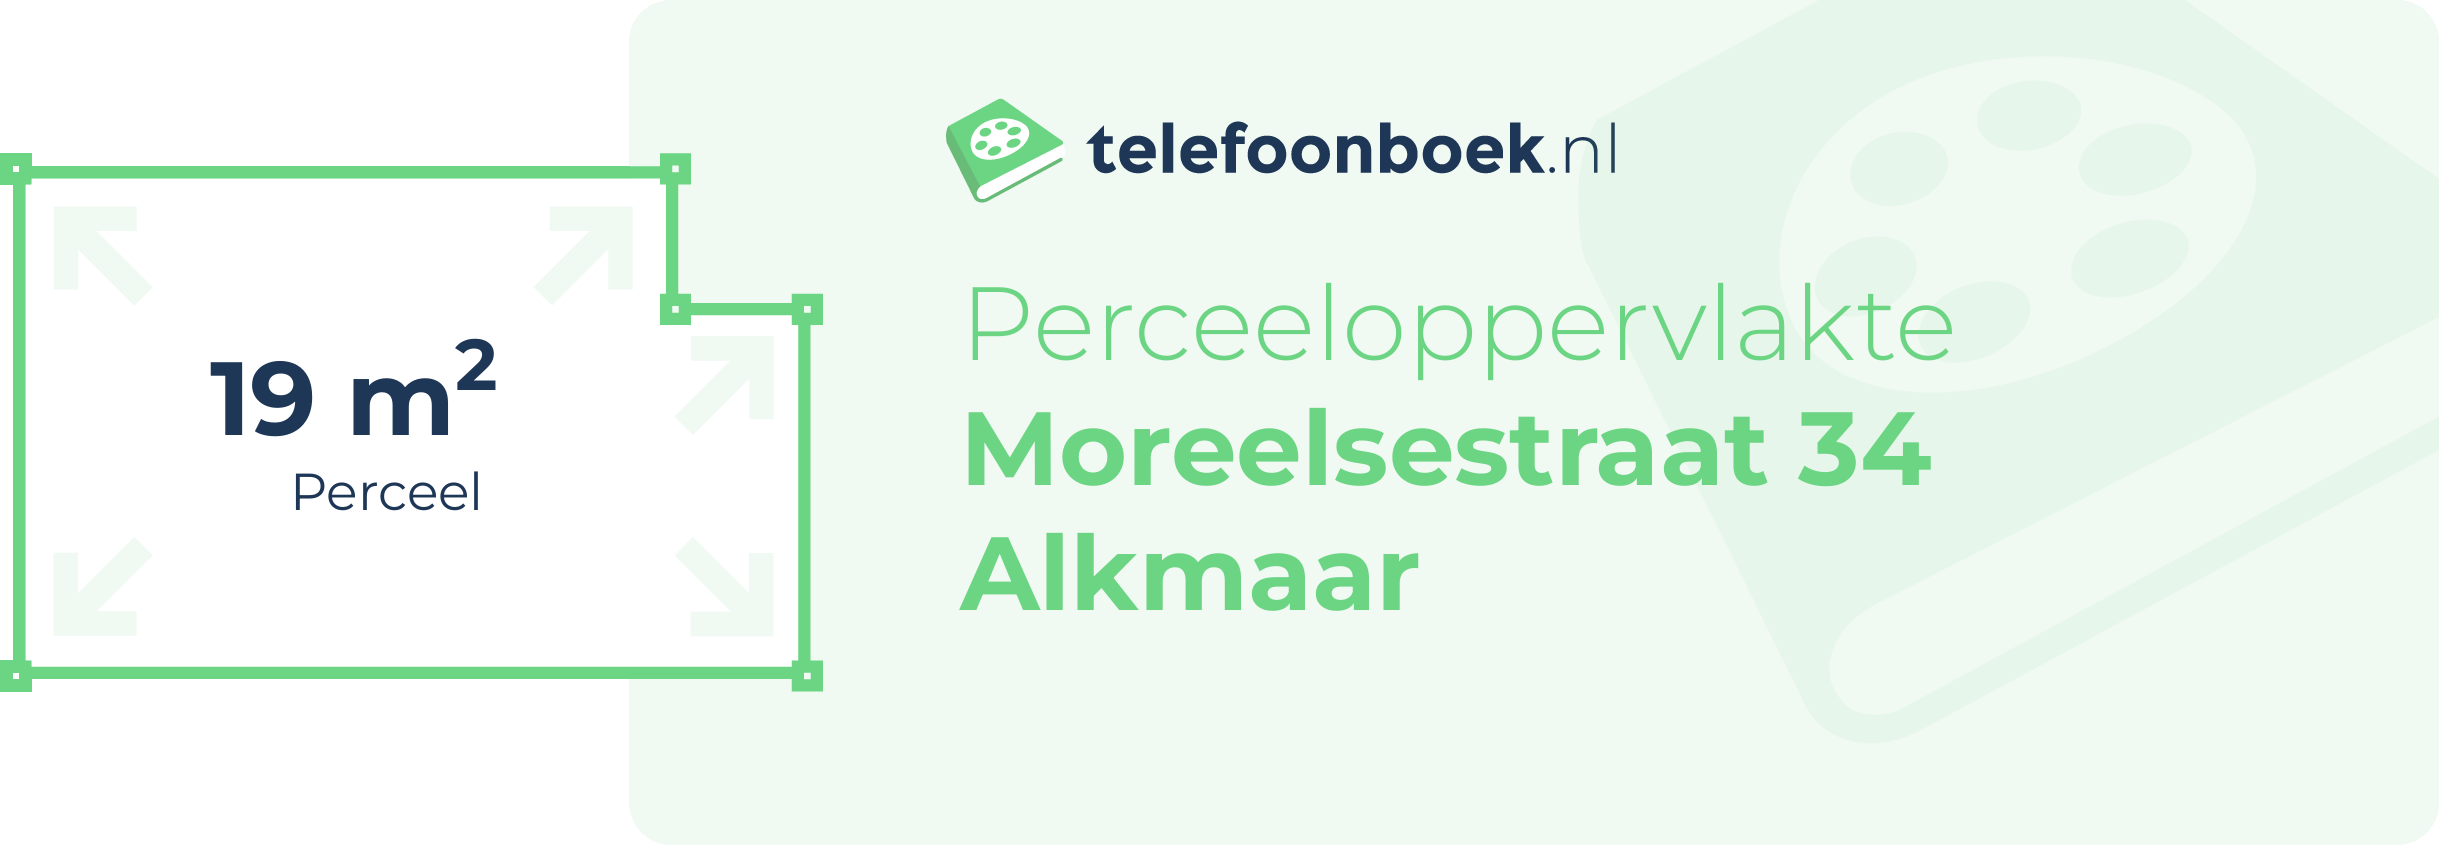 Perceeloppervlakte Moreelsestraat 34 Alkmaar